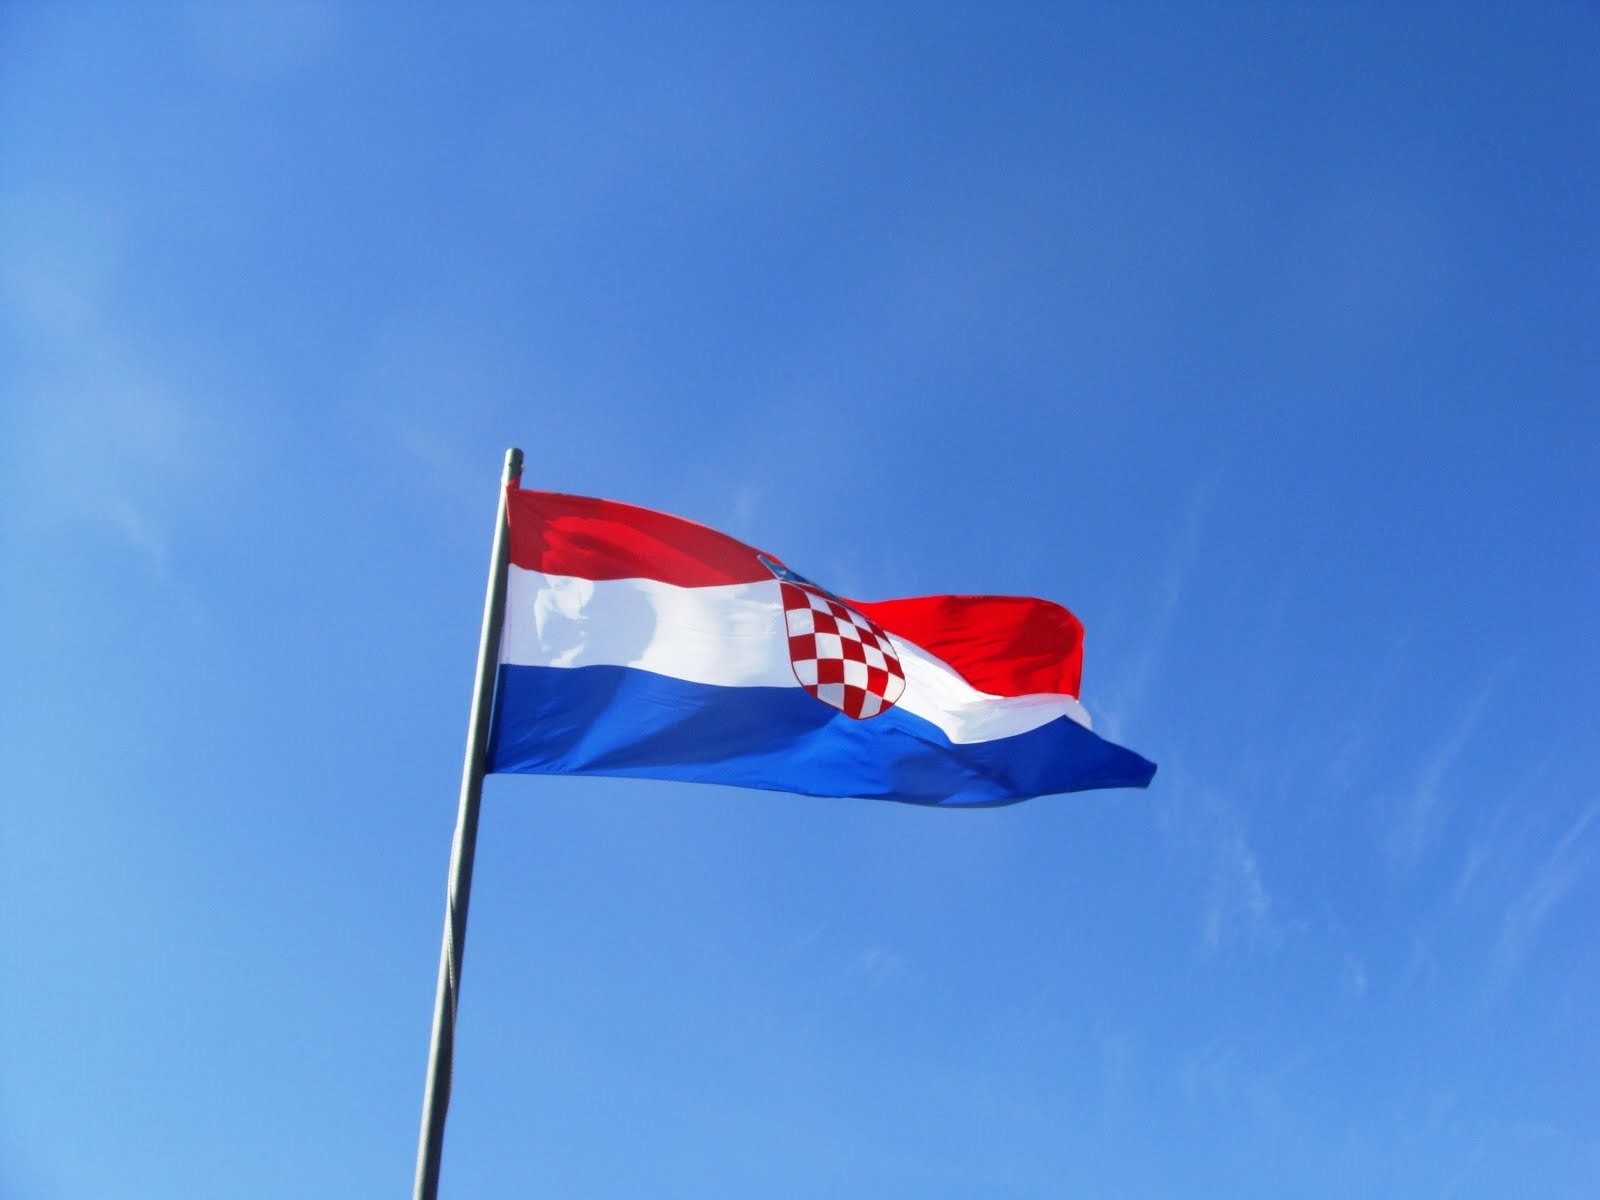 Κροατία: Προβληματισμός στην κυβέρνηση για το ενδεχόμενο συμφωνίας με το ΔΝΤ